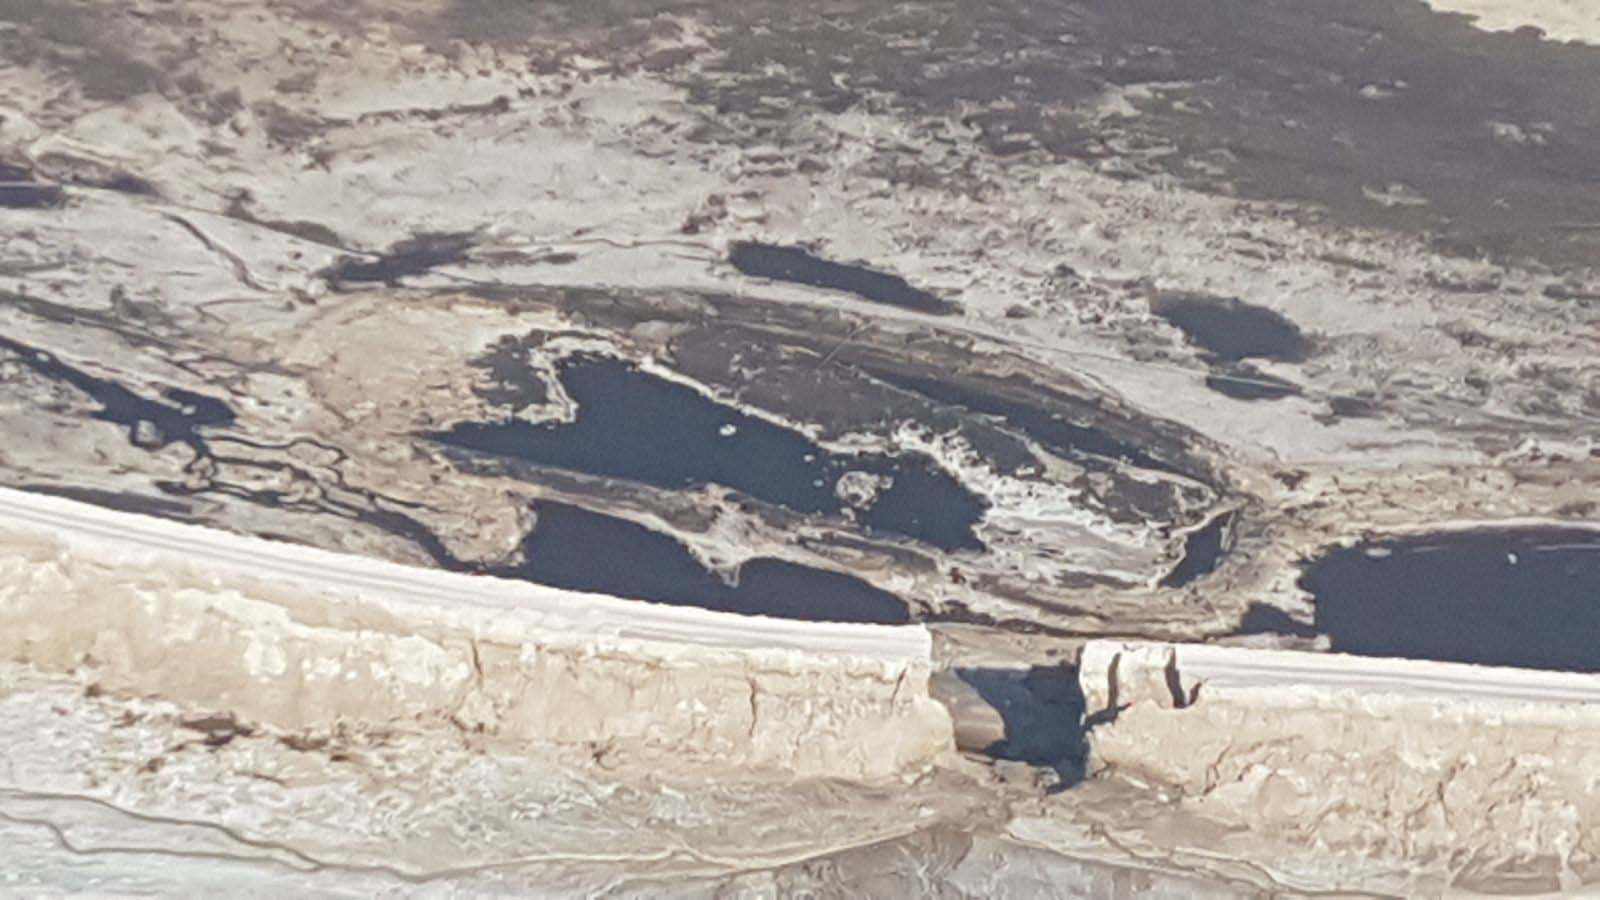 בריכה מספר 3 שקרסה וגרמה לאסון בנחל אשלים 30 ביוני 2017. (צילום: רשות הטבע והגנים)